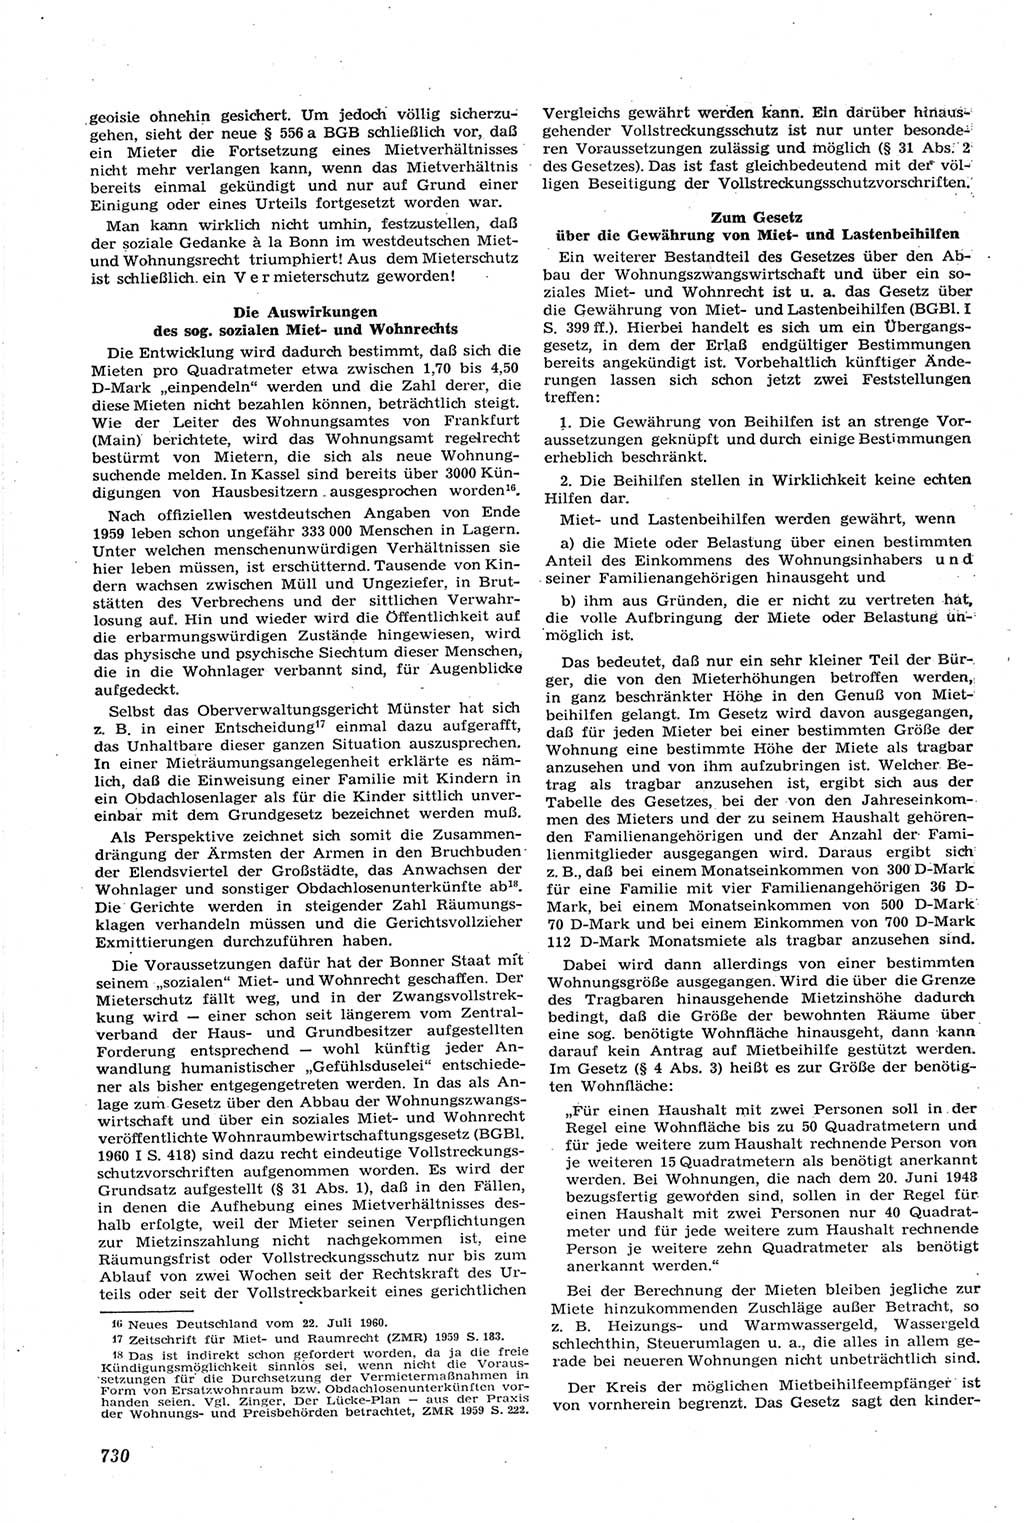 Neue Justiz (NJ), Zeitschrift für Recht und Rechtswissenschaft [Deutsche Demokratische Republik (DDR)], 14. Jahrgang 1960, Seite 730 (NJ DDR 1960, S. 730)